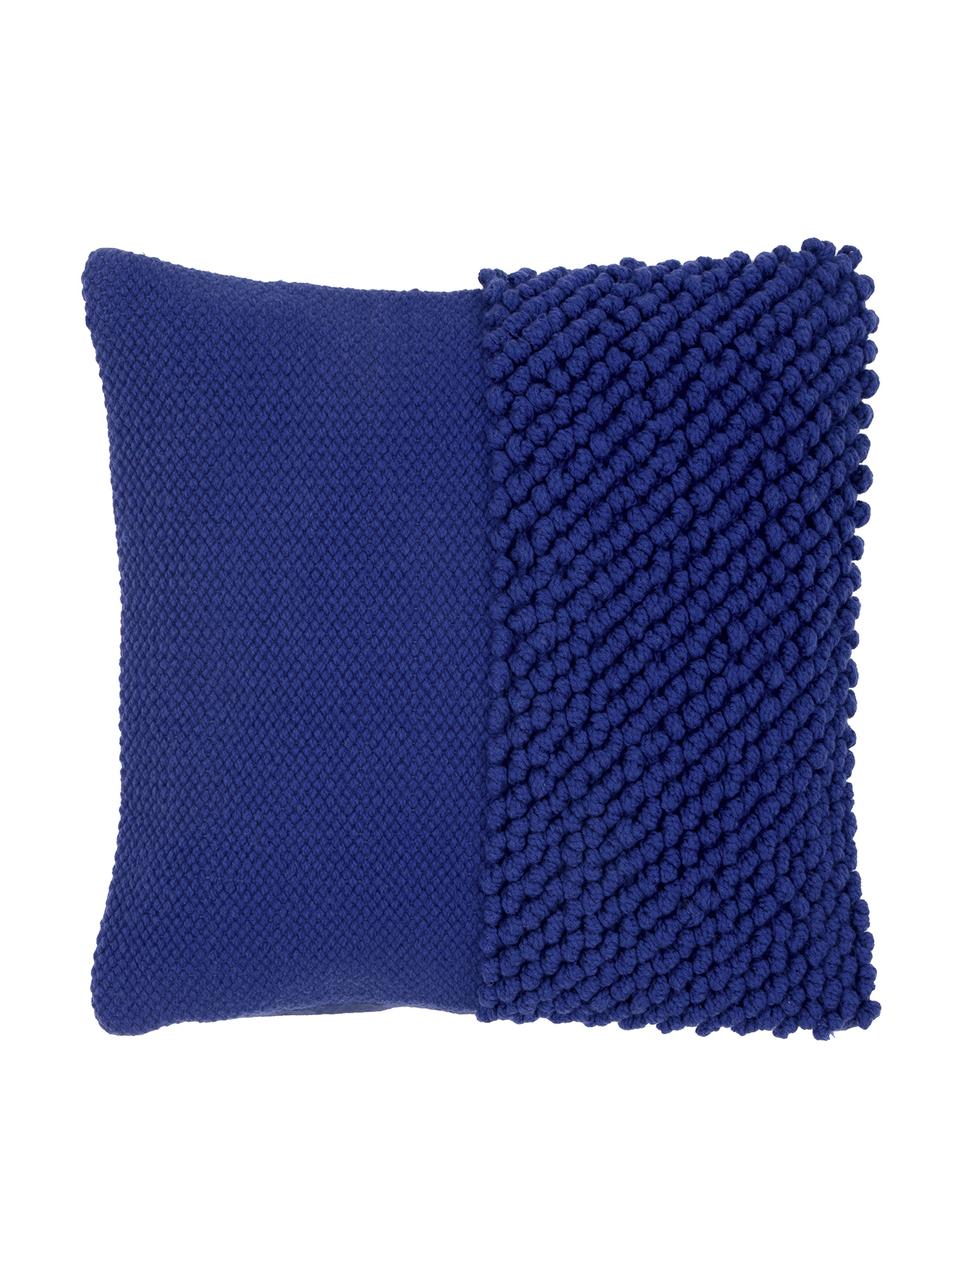 Federa arredo con superficie strutturata Andi, Retro: 100% cotone, Blu, Larg. 40 x Lung. 40 cm